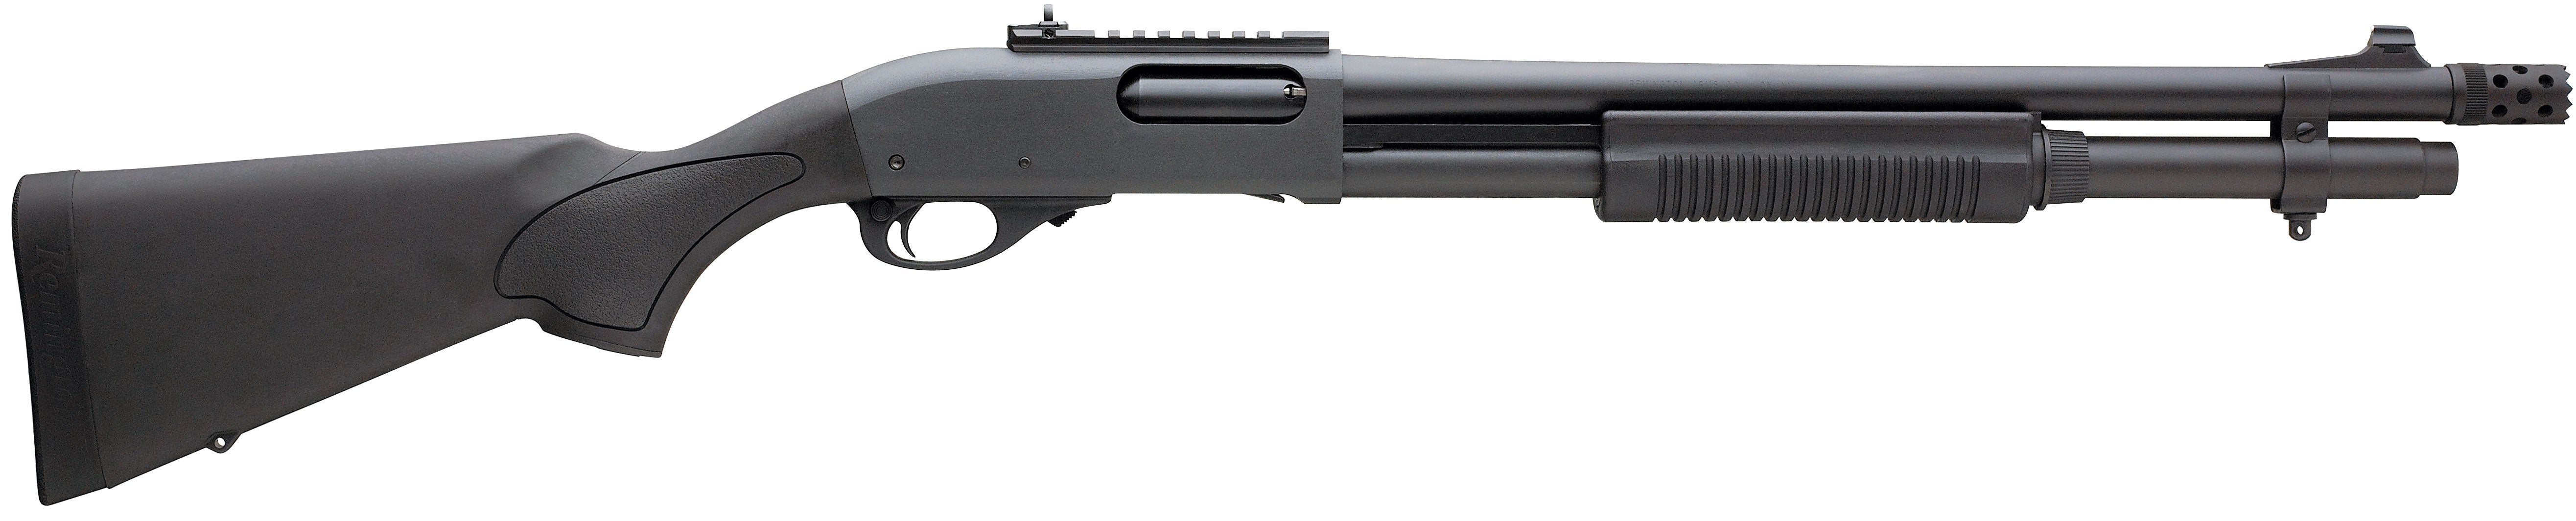 Remington 870 Express Tactical